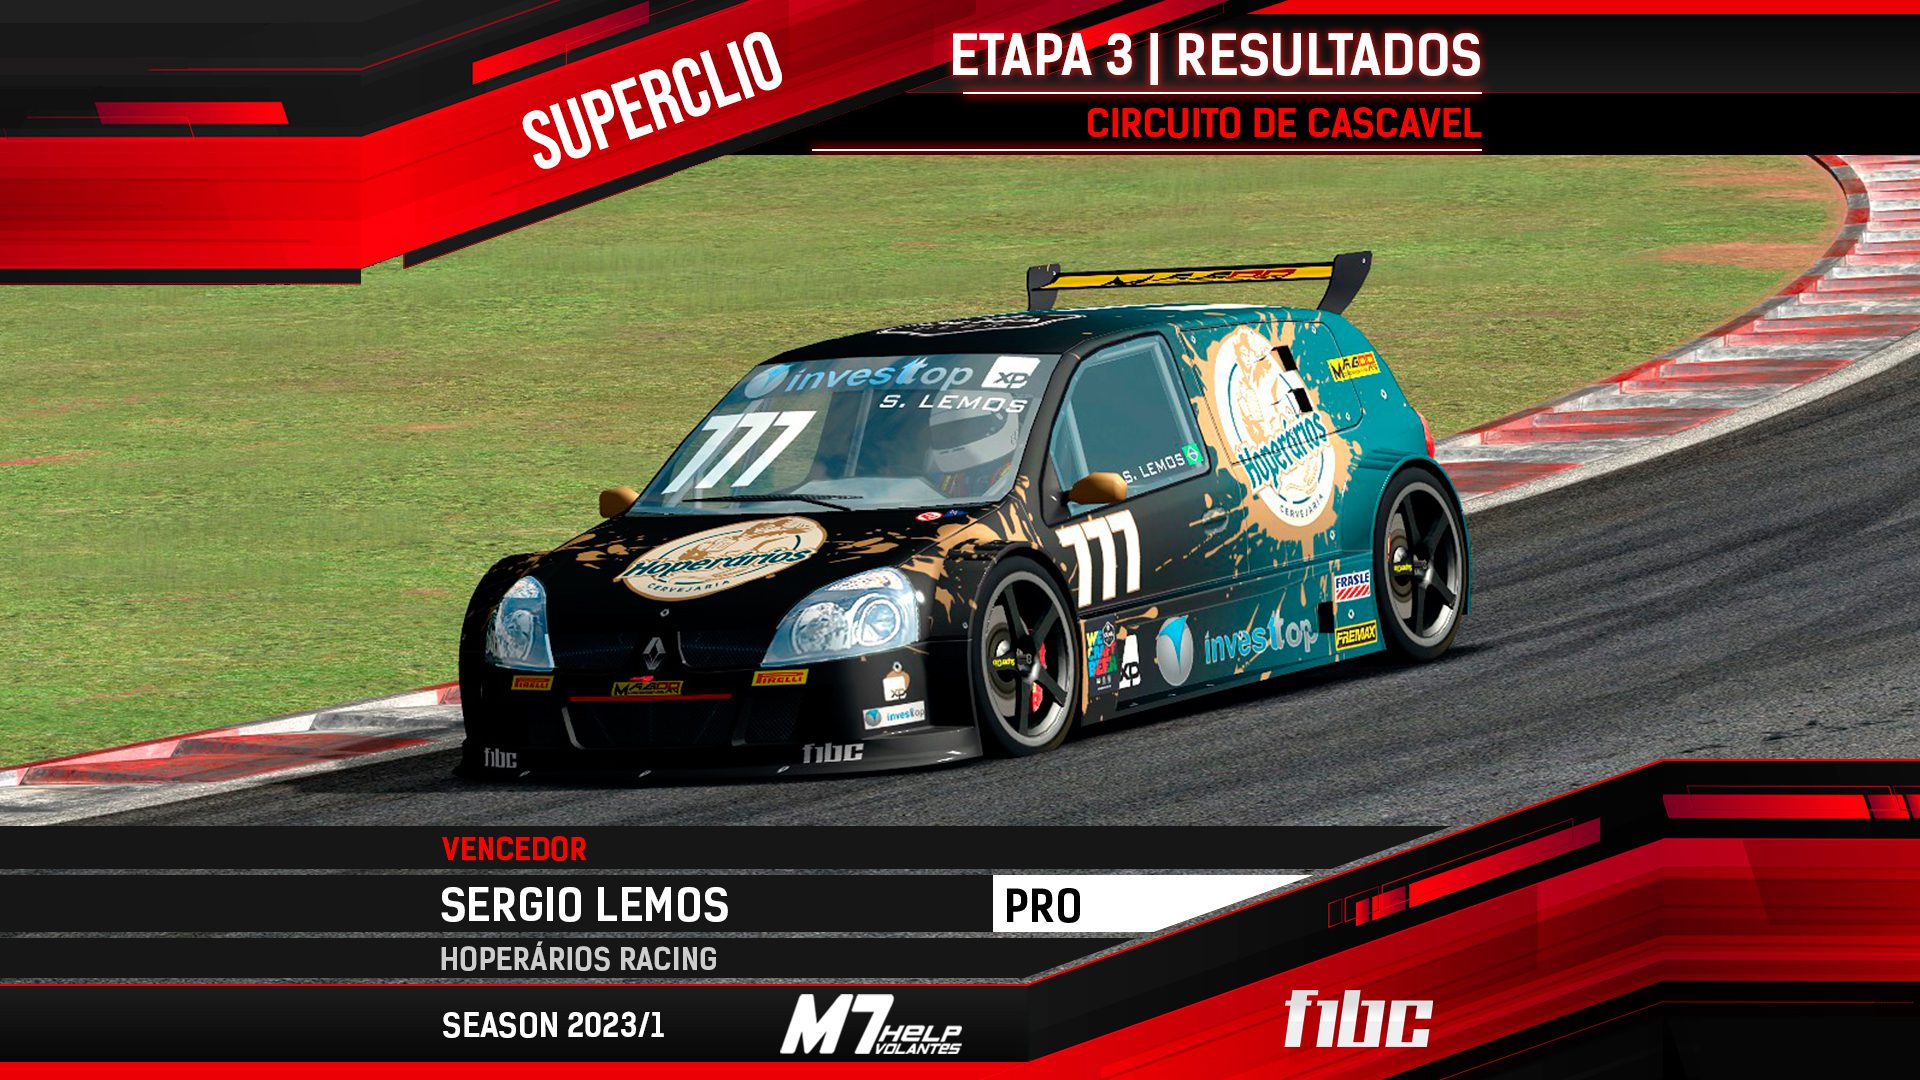 F1BC Superclio: En Cascavel, Sergio Lemos (Hoperários) gana una carrera llena de disputas